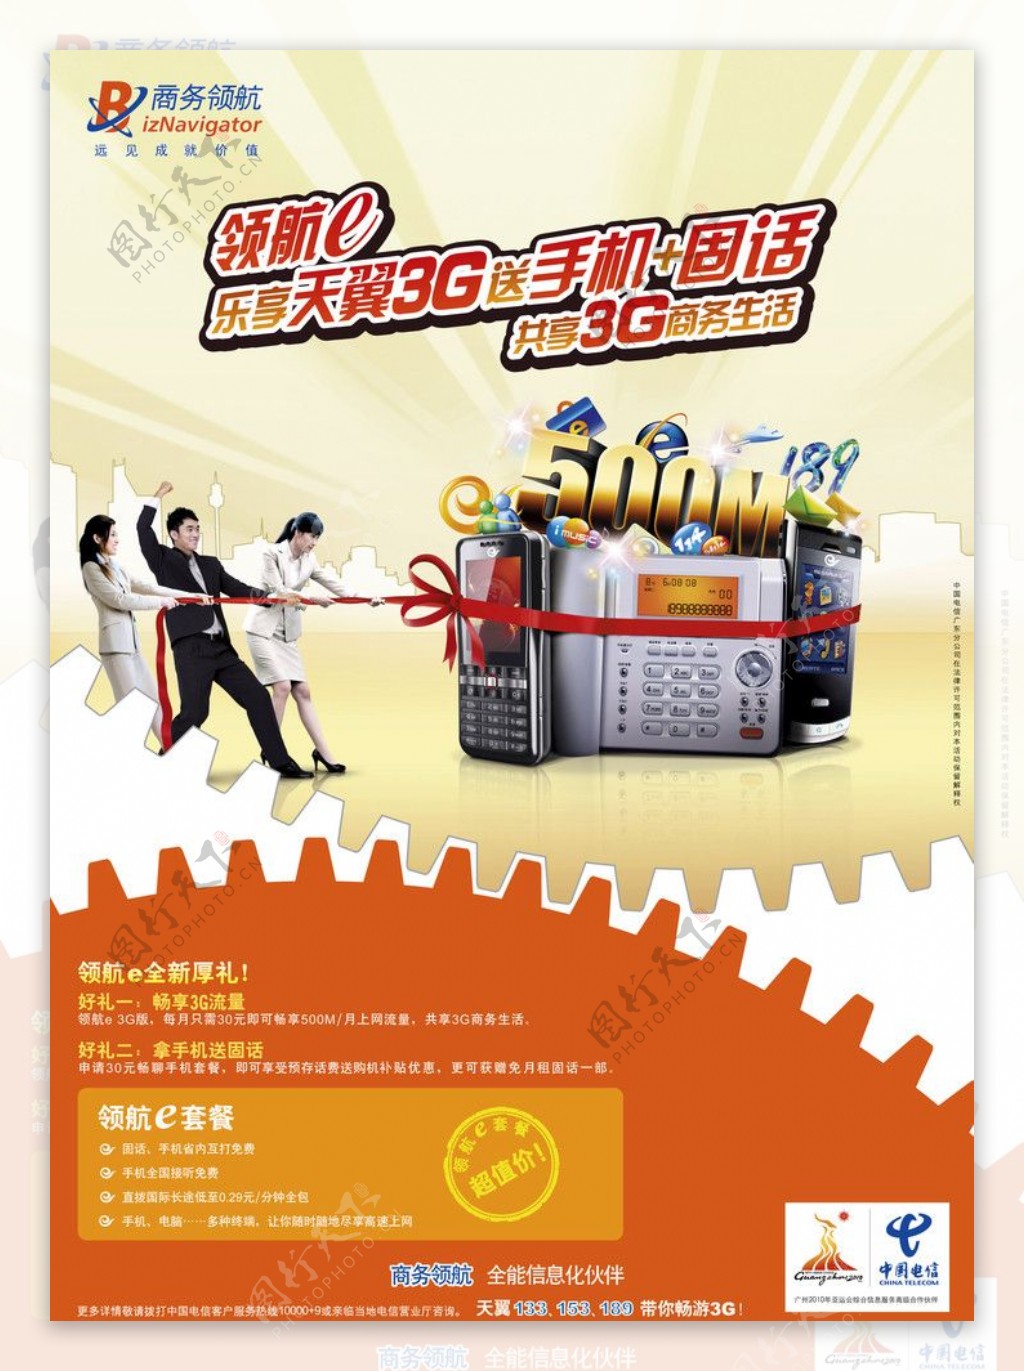 中国电信乐享3G图片